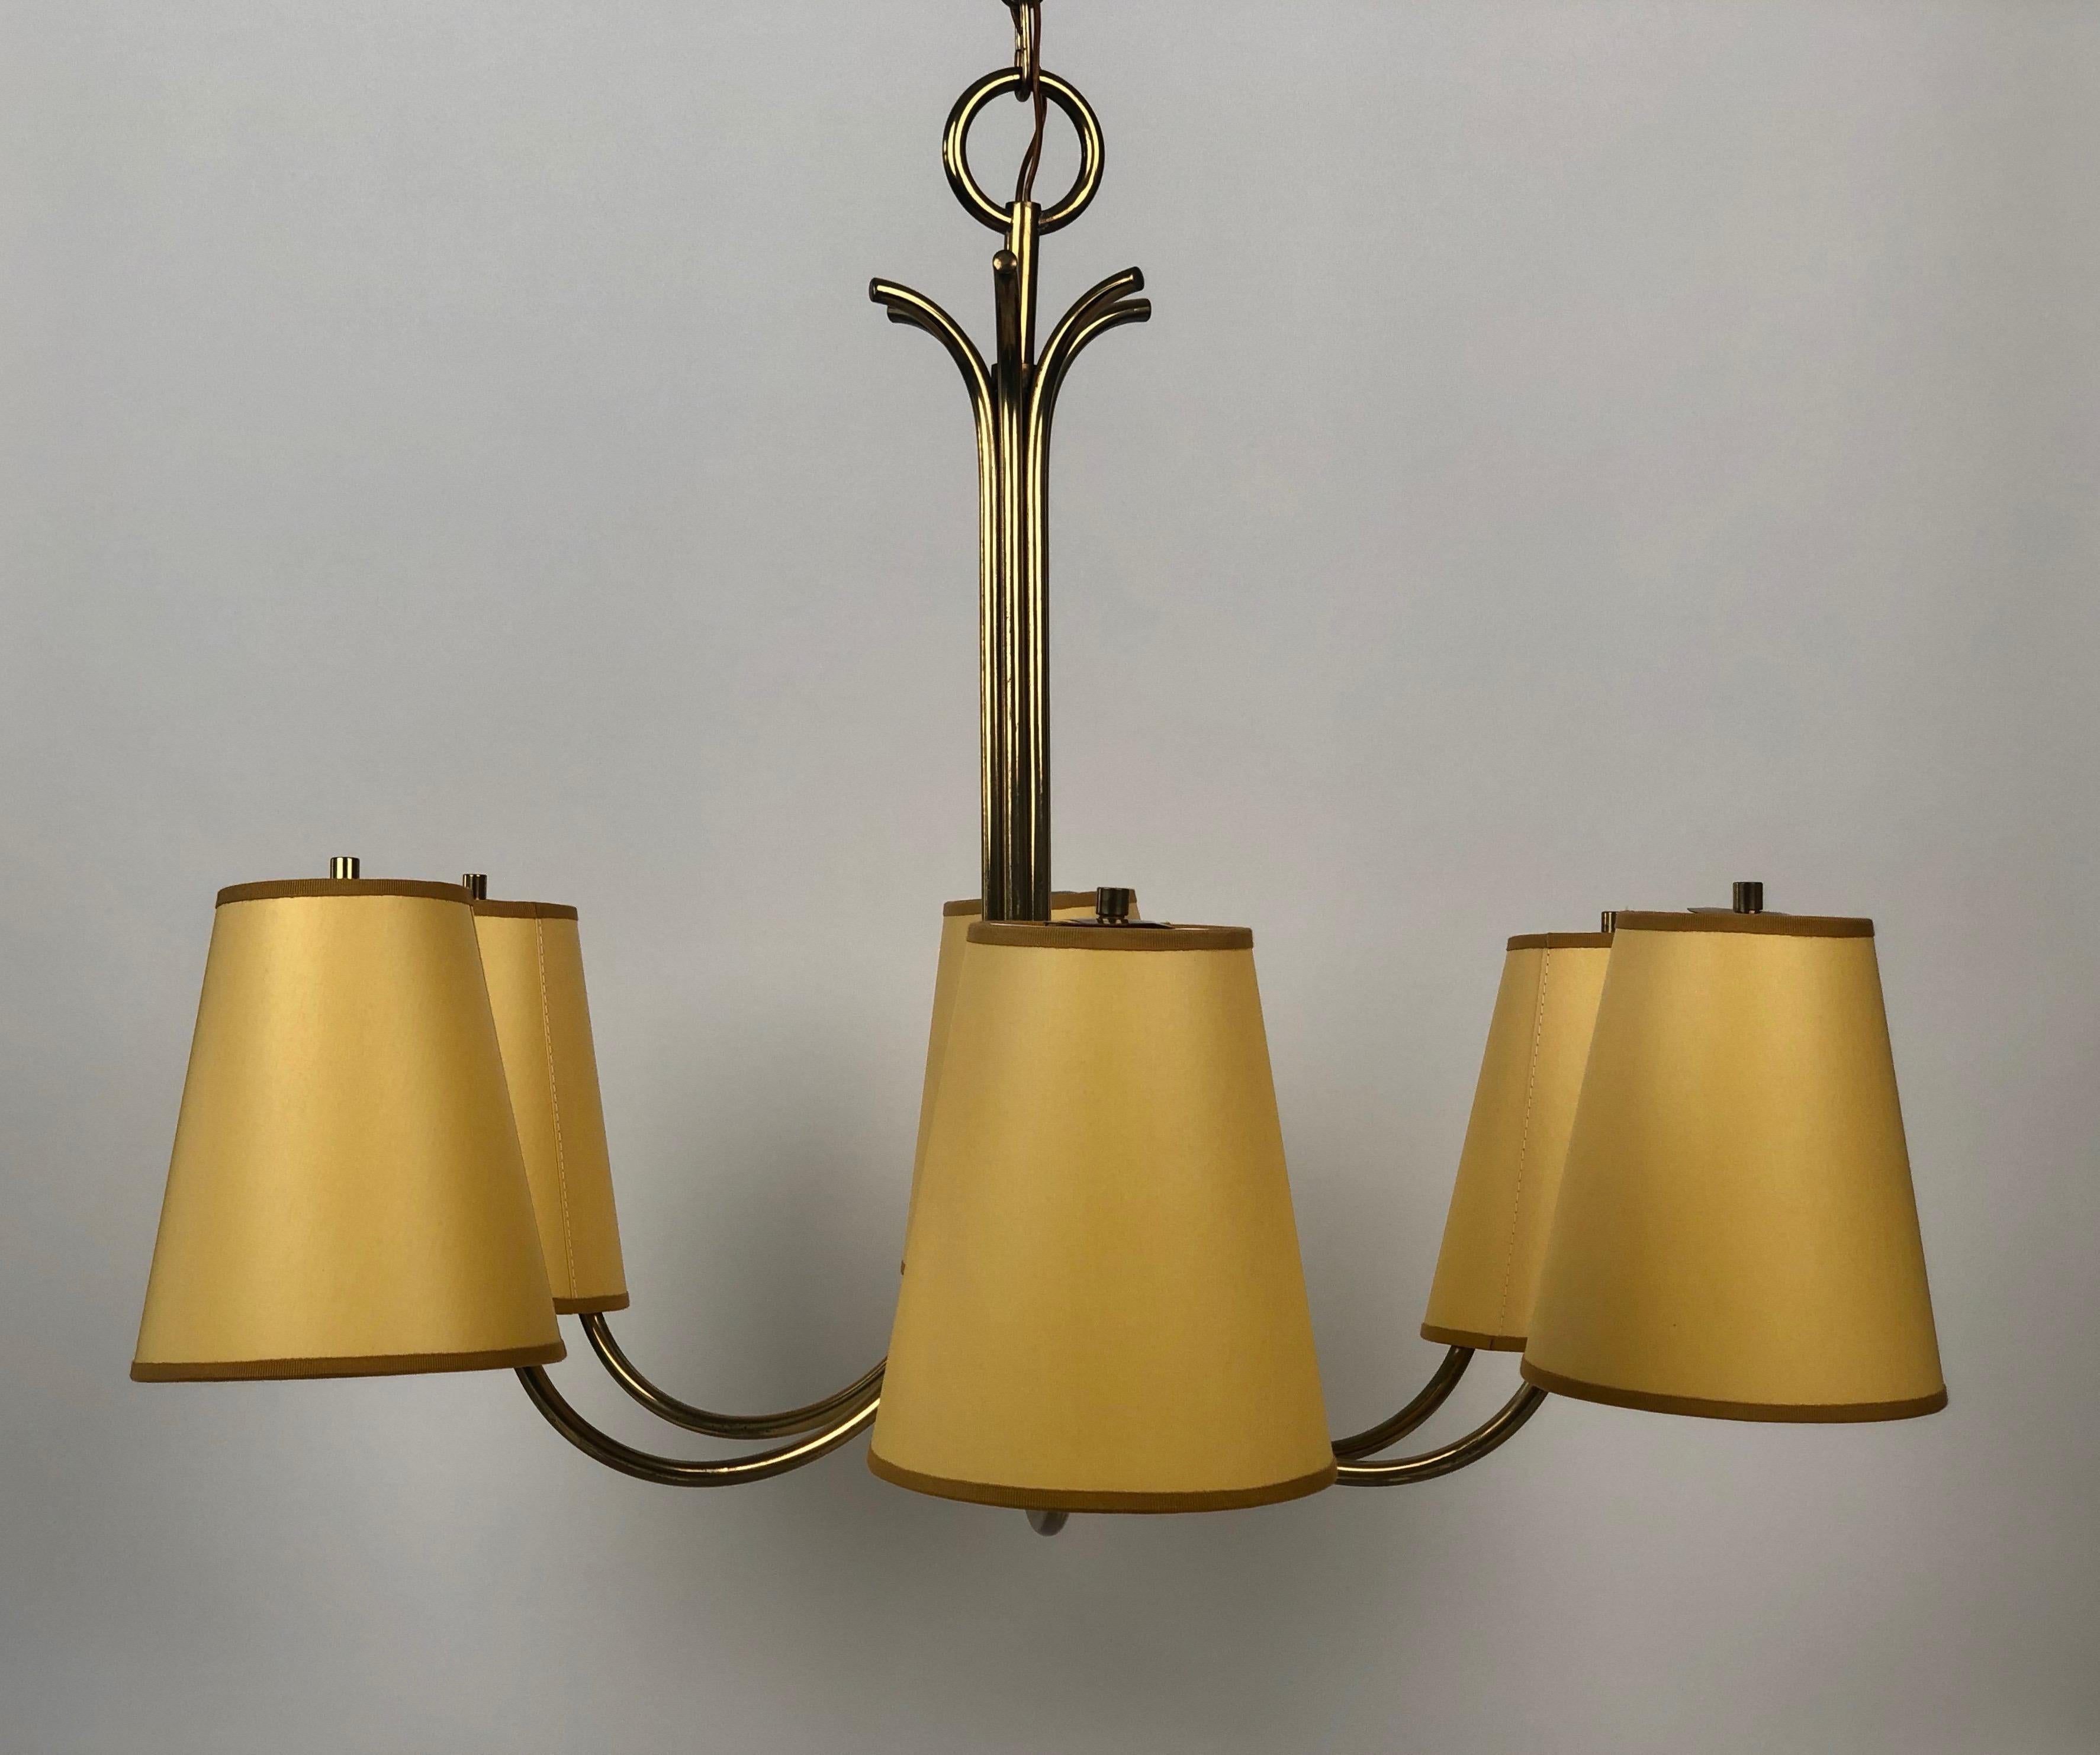 Grand lustre  en laiton avec six bras, conçu par Josef Frank dans les années 1950, Autriche.
Les abat-jour en soie de couleur jaune utilisent la structure métallique d'origine. L'électricité a été contrôlée.